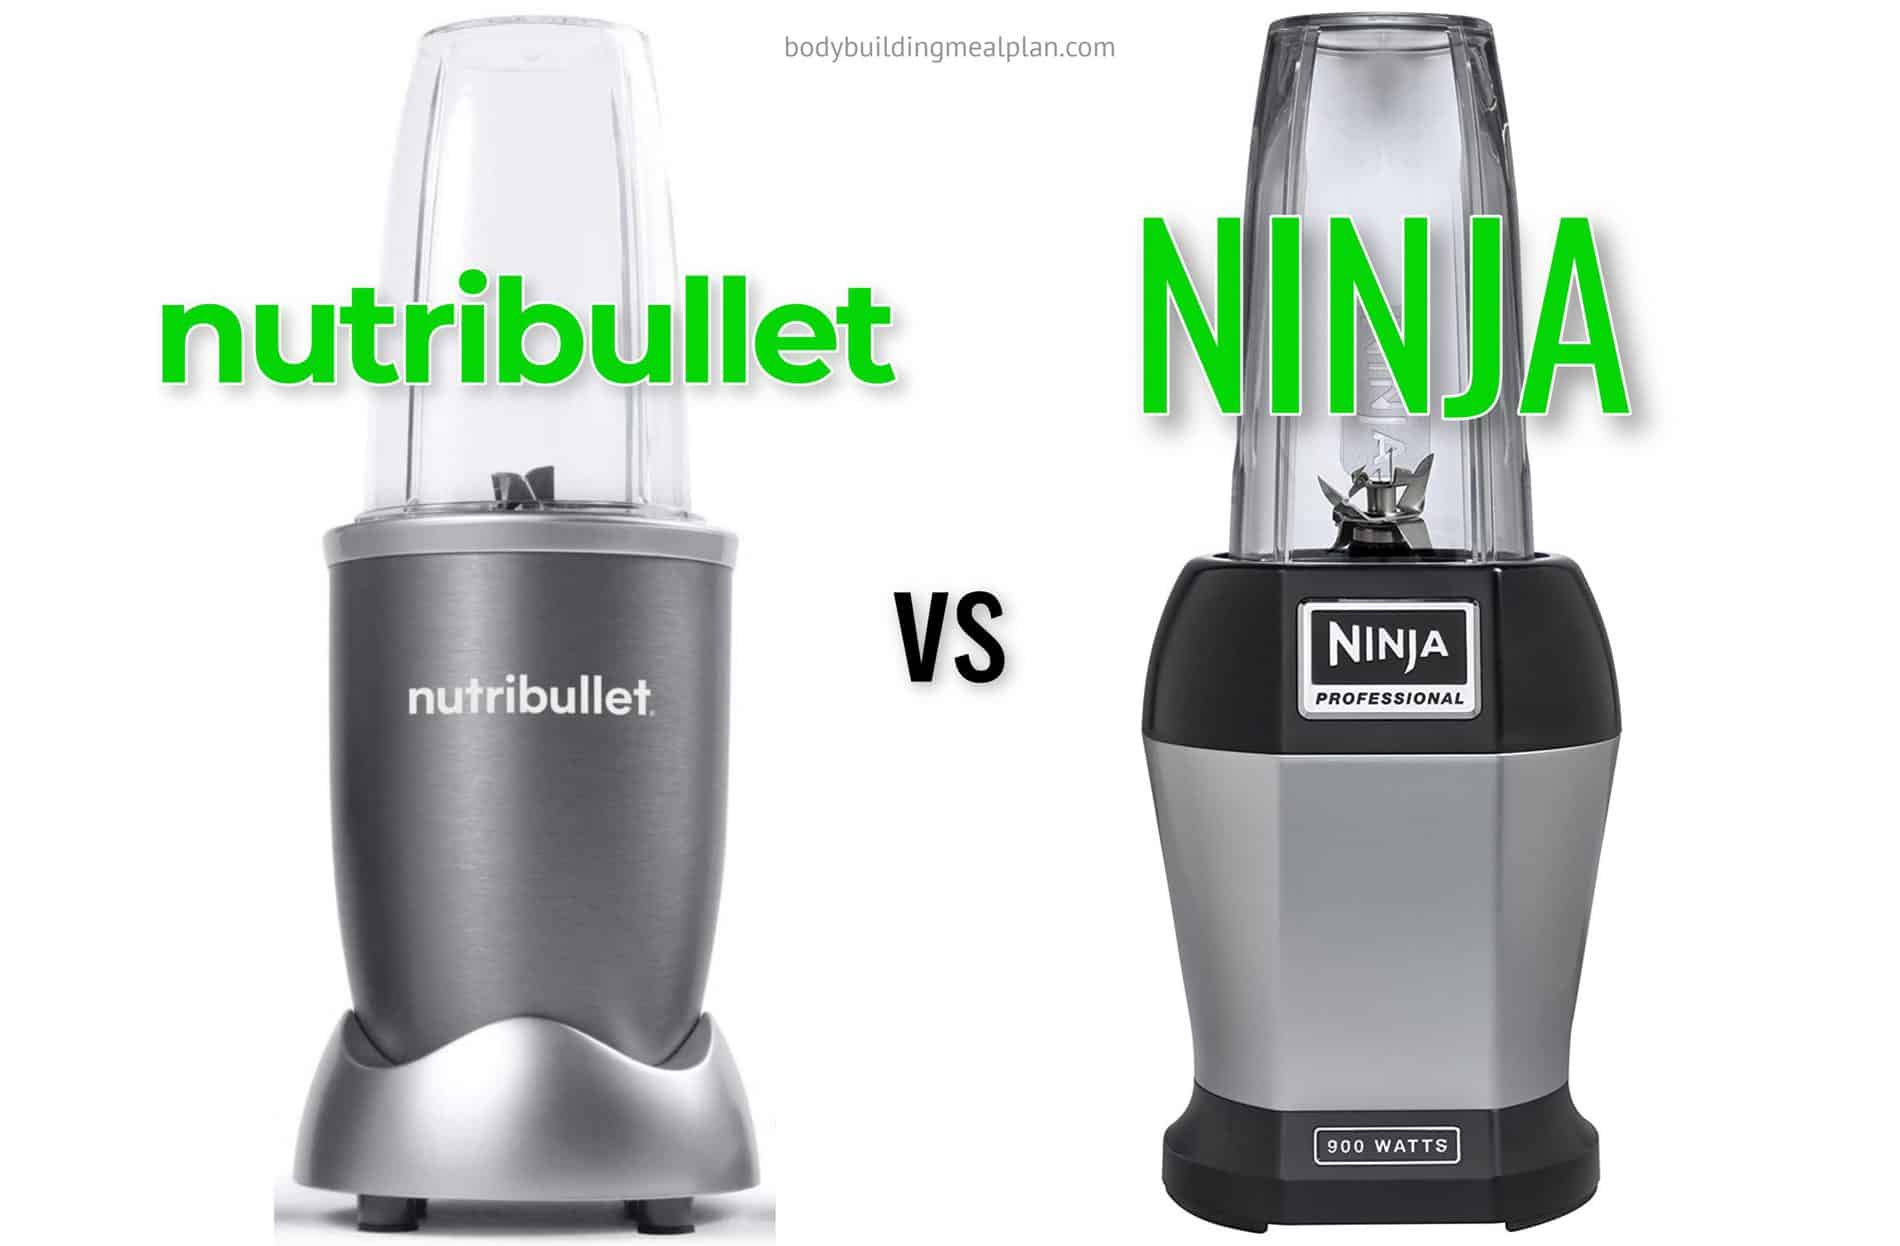 Nutribullet vs Ninja Bullet- The Blender Battle – Sunny in London